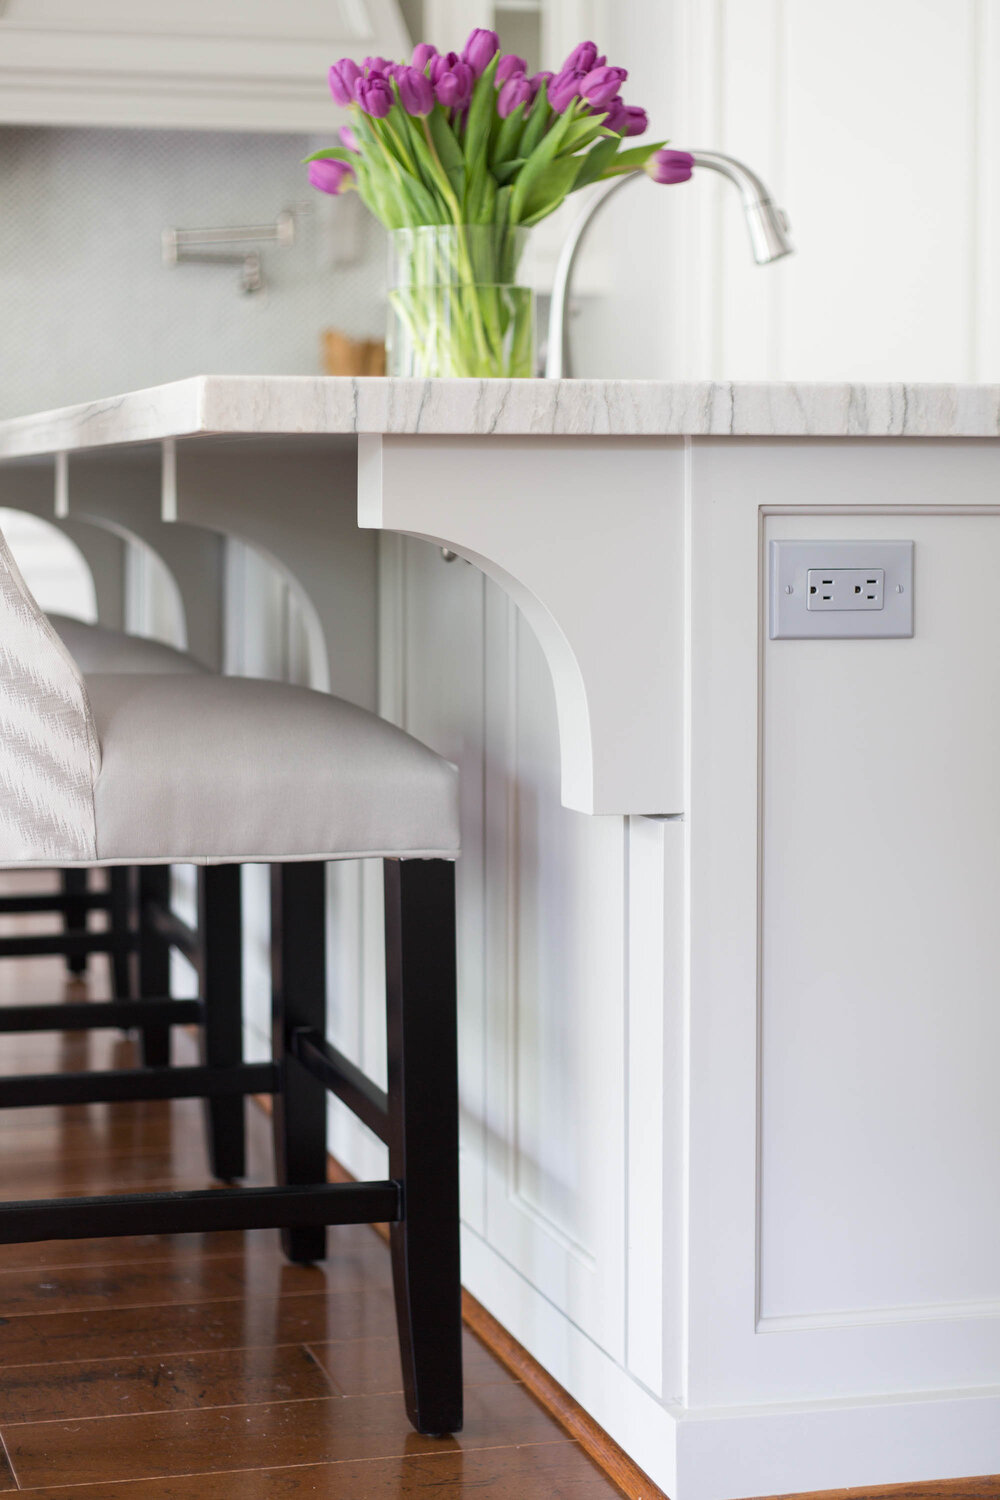 Hệ thống ổ điện tích hợp ở mặt bên của đảo bếp là cách hay, nên chọn ổ điện đồng màu với màu sơn của nội thất.